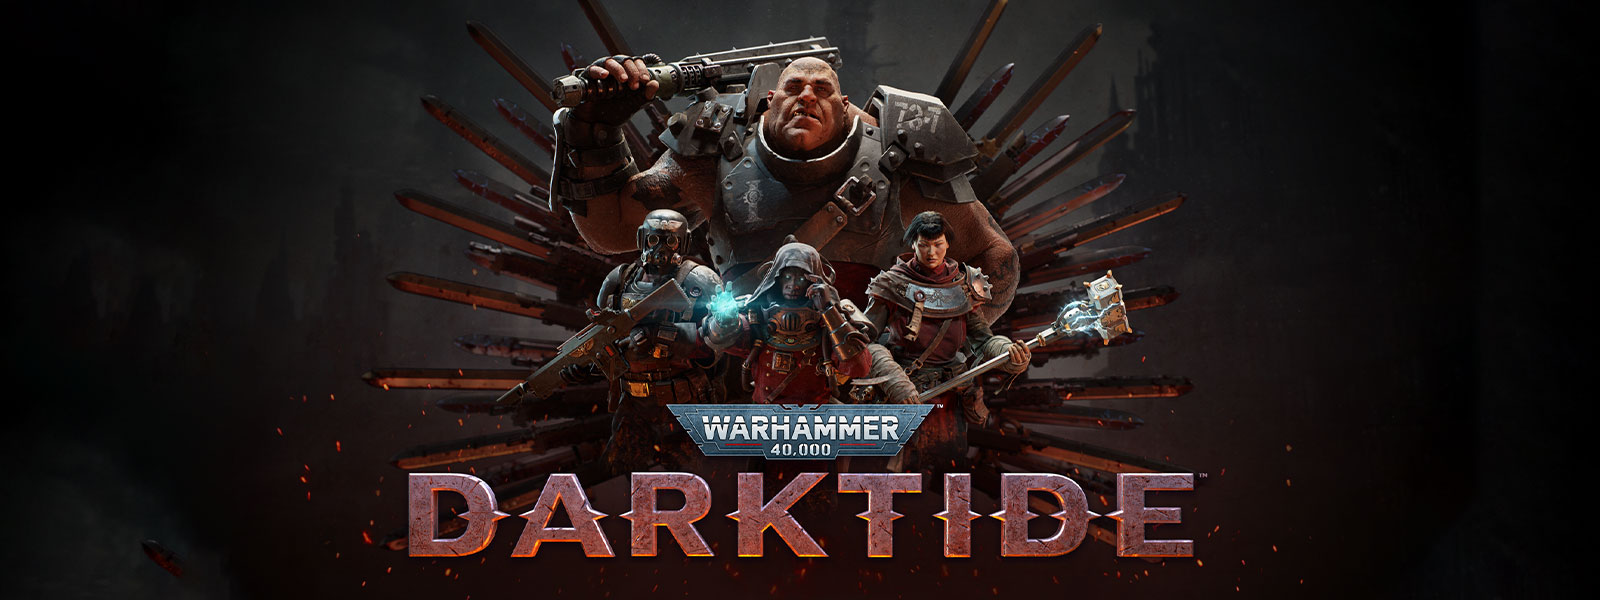 Warhammer 40 000: Darktide, en gruppe pansrede personer poserer foran et bladmotiv.